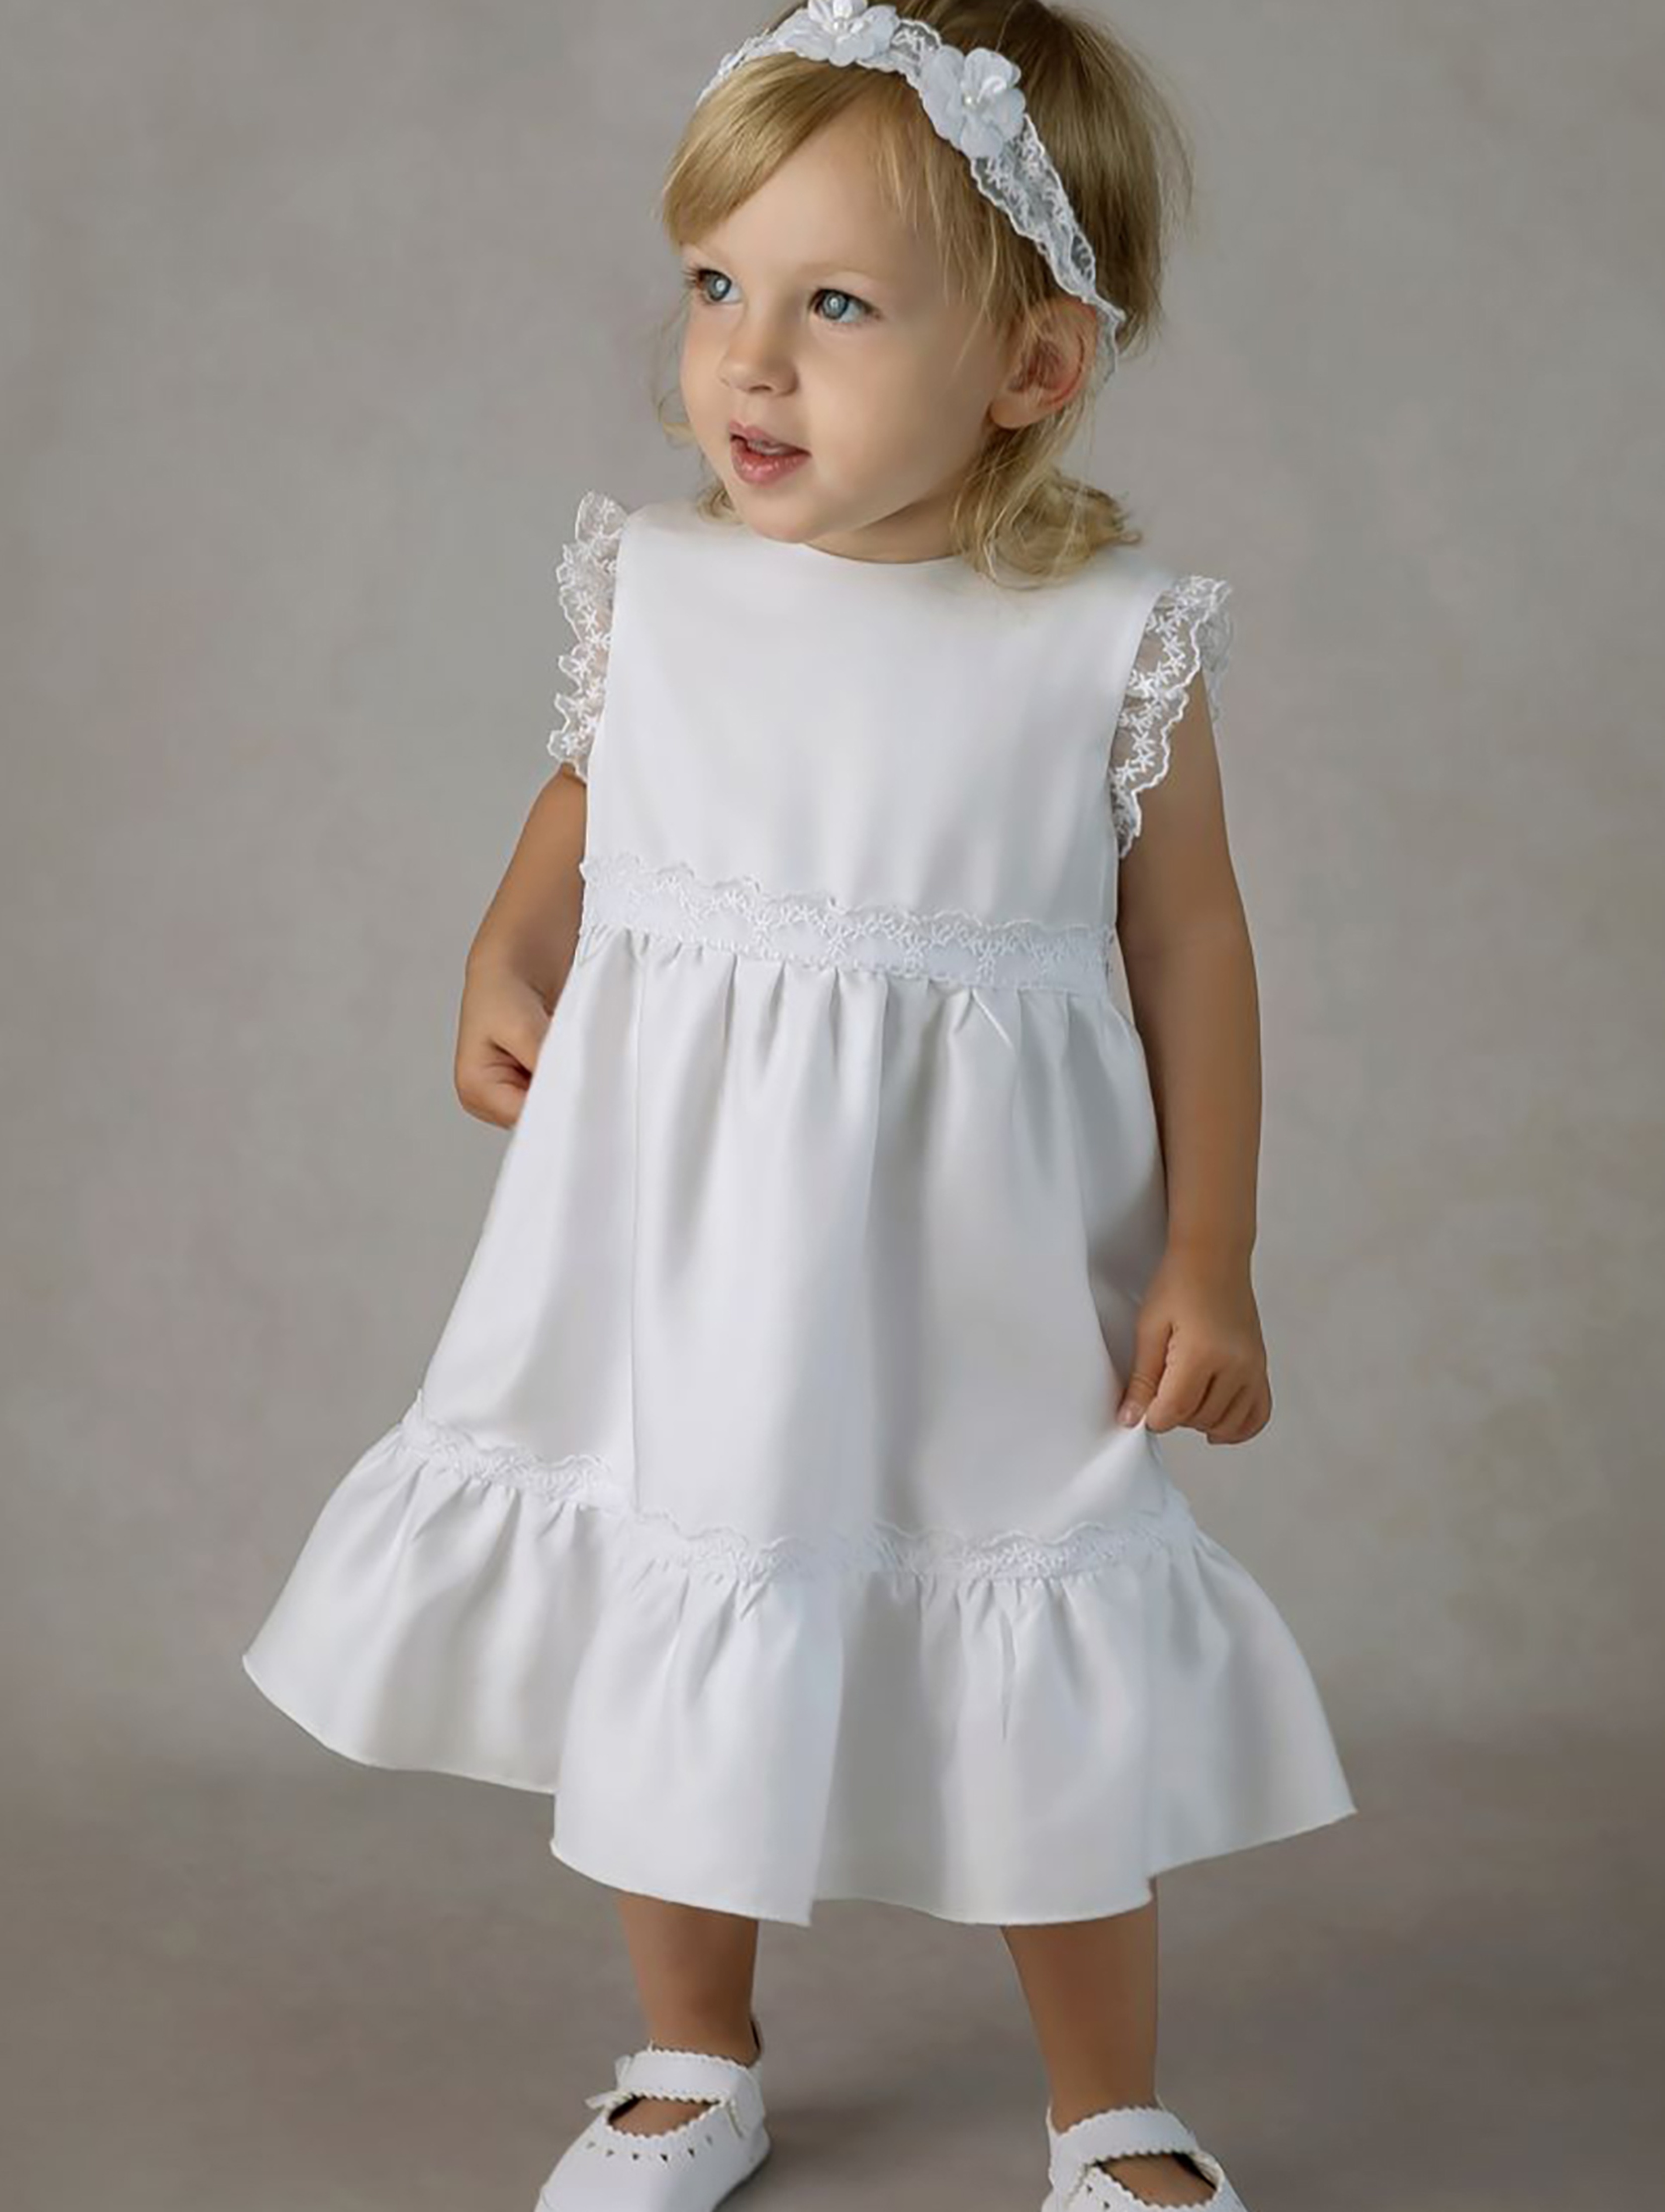 Biała sukienka niemowlęca do chrztu Marysia